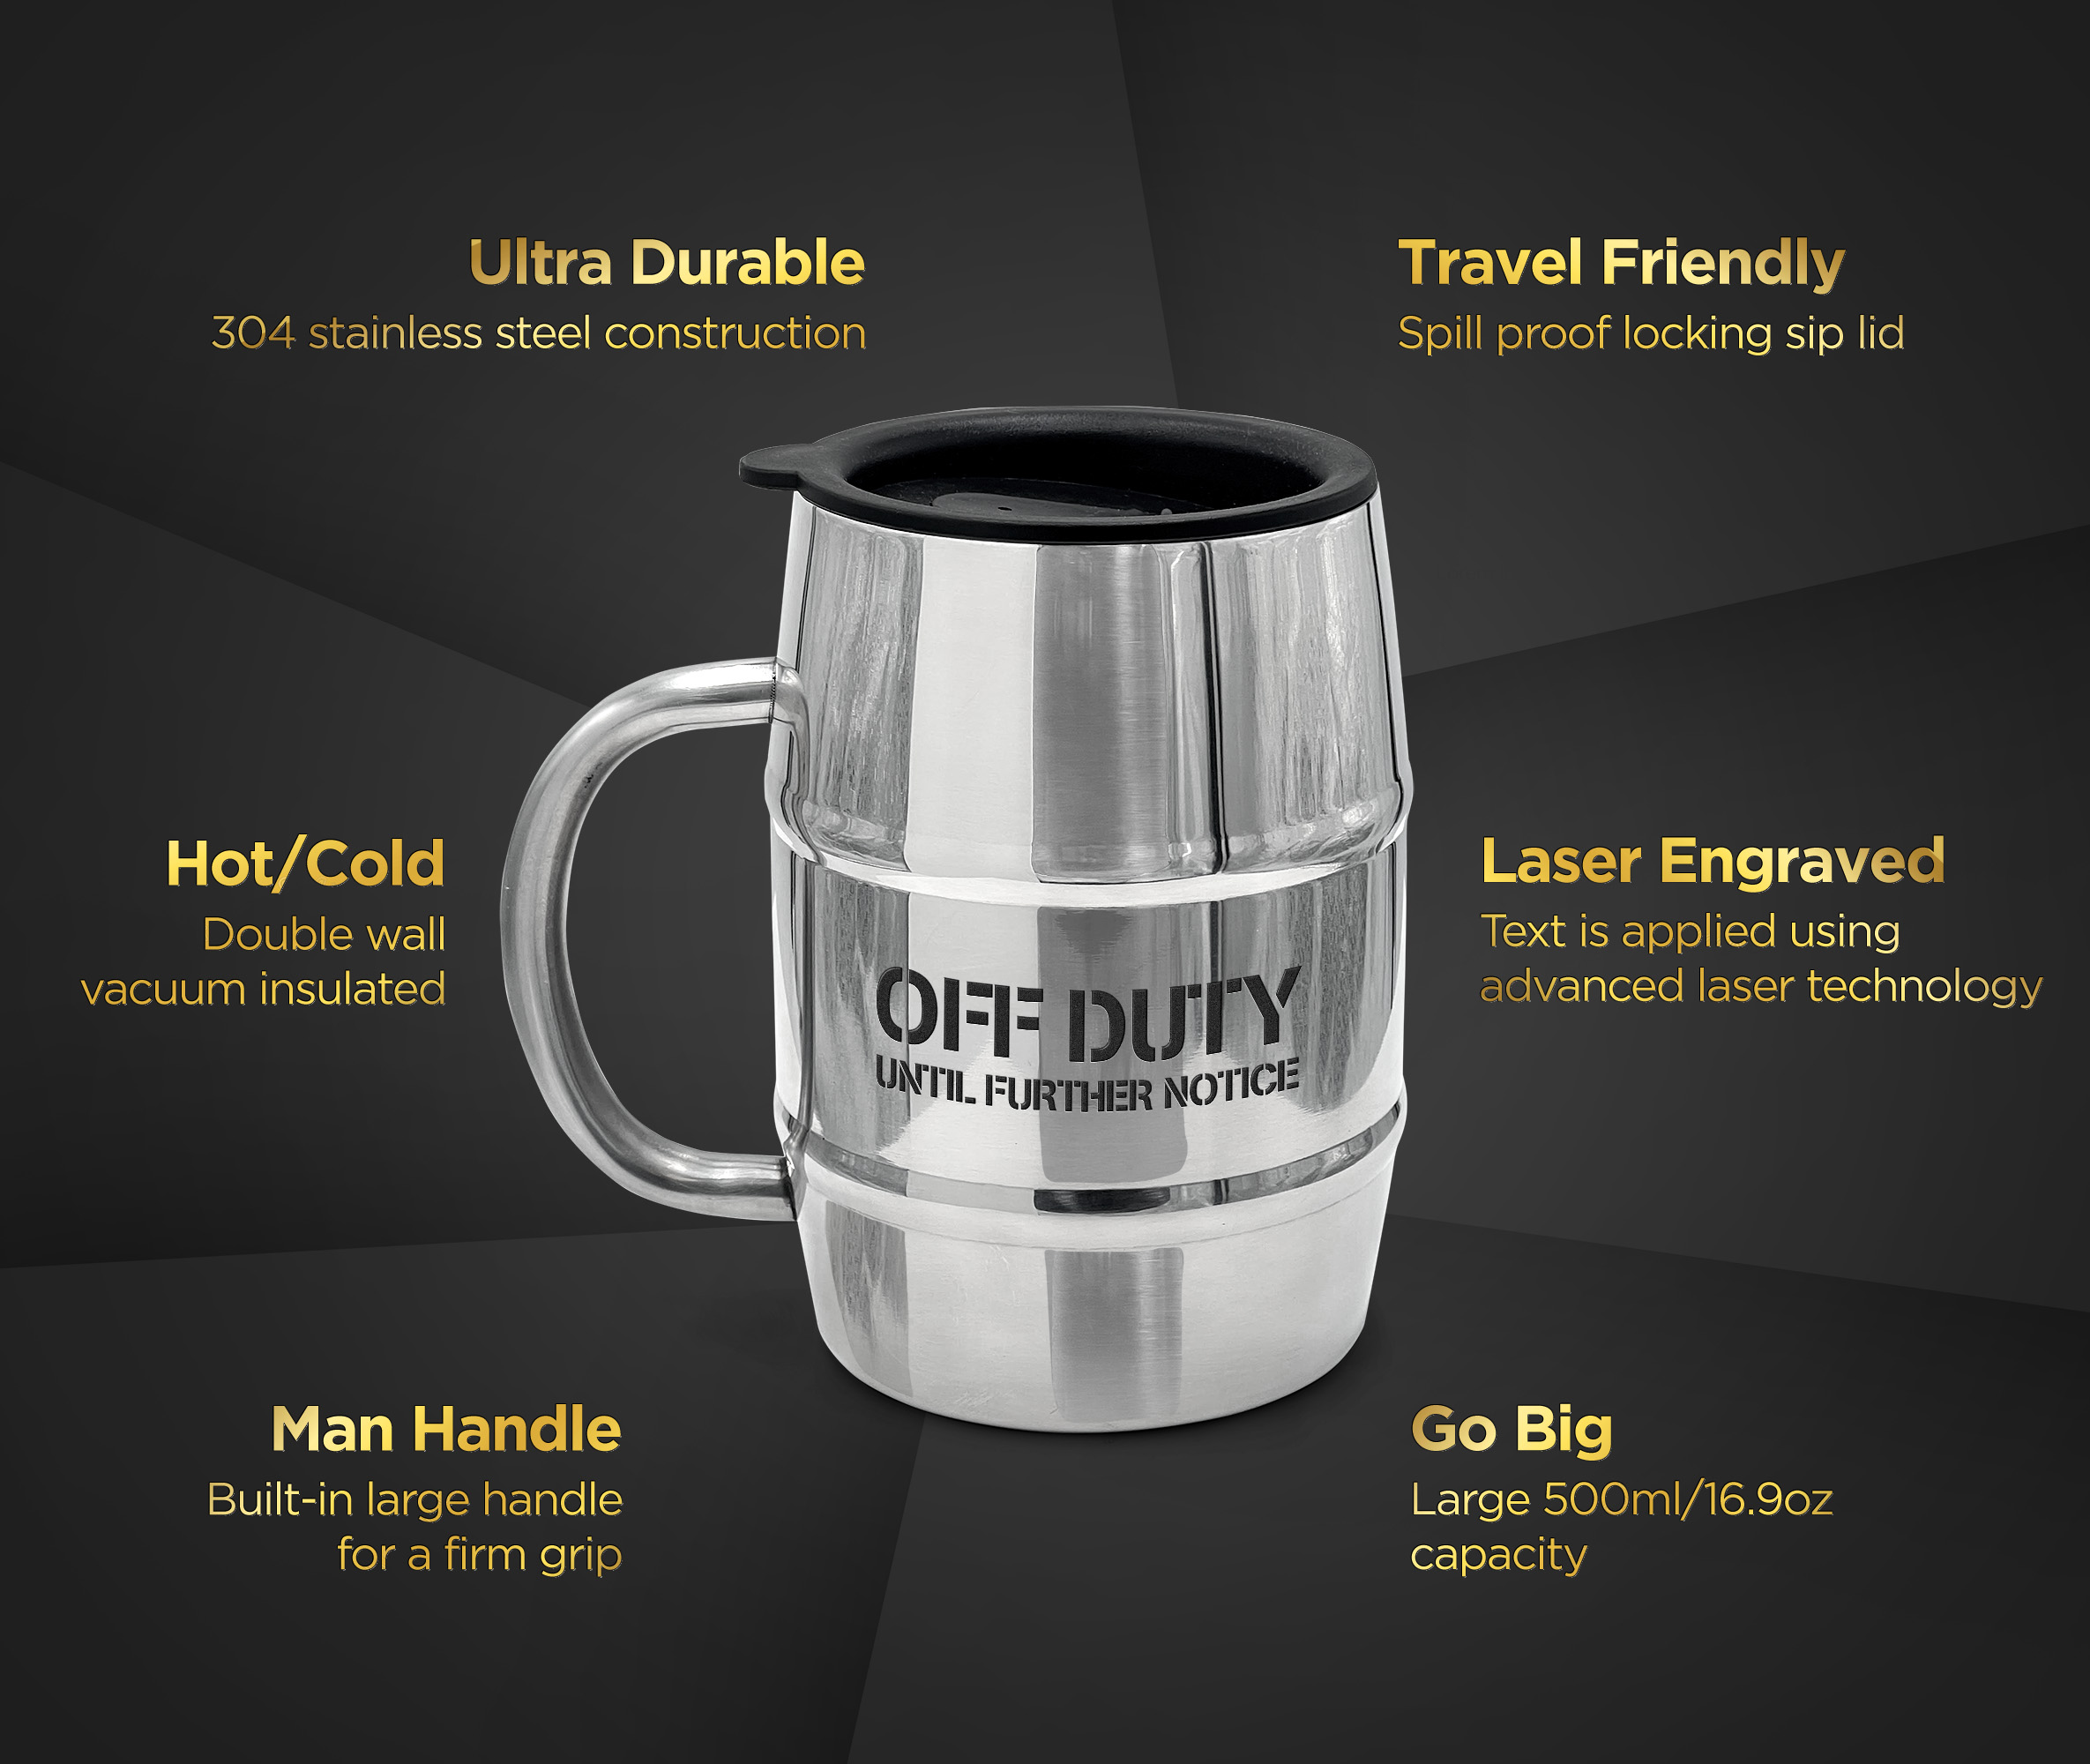 Stainless Steel Mug,Barrel Mug, Coffee Mug, Beer Mug, 16oz. (1)